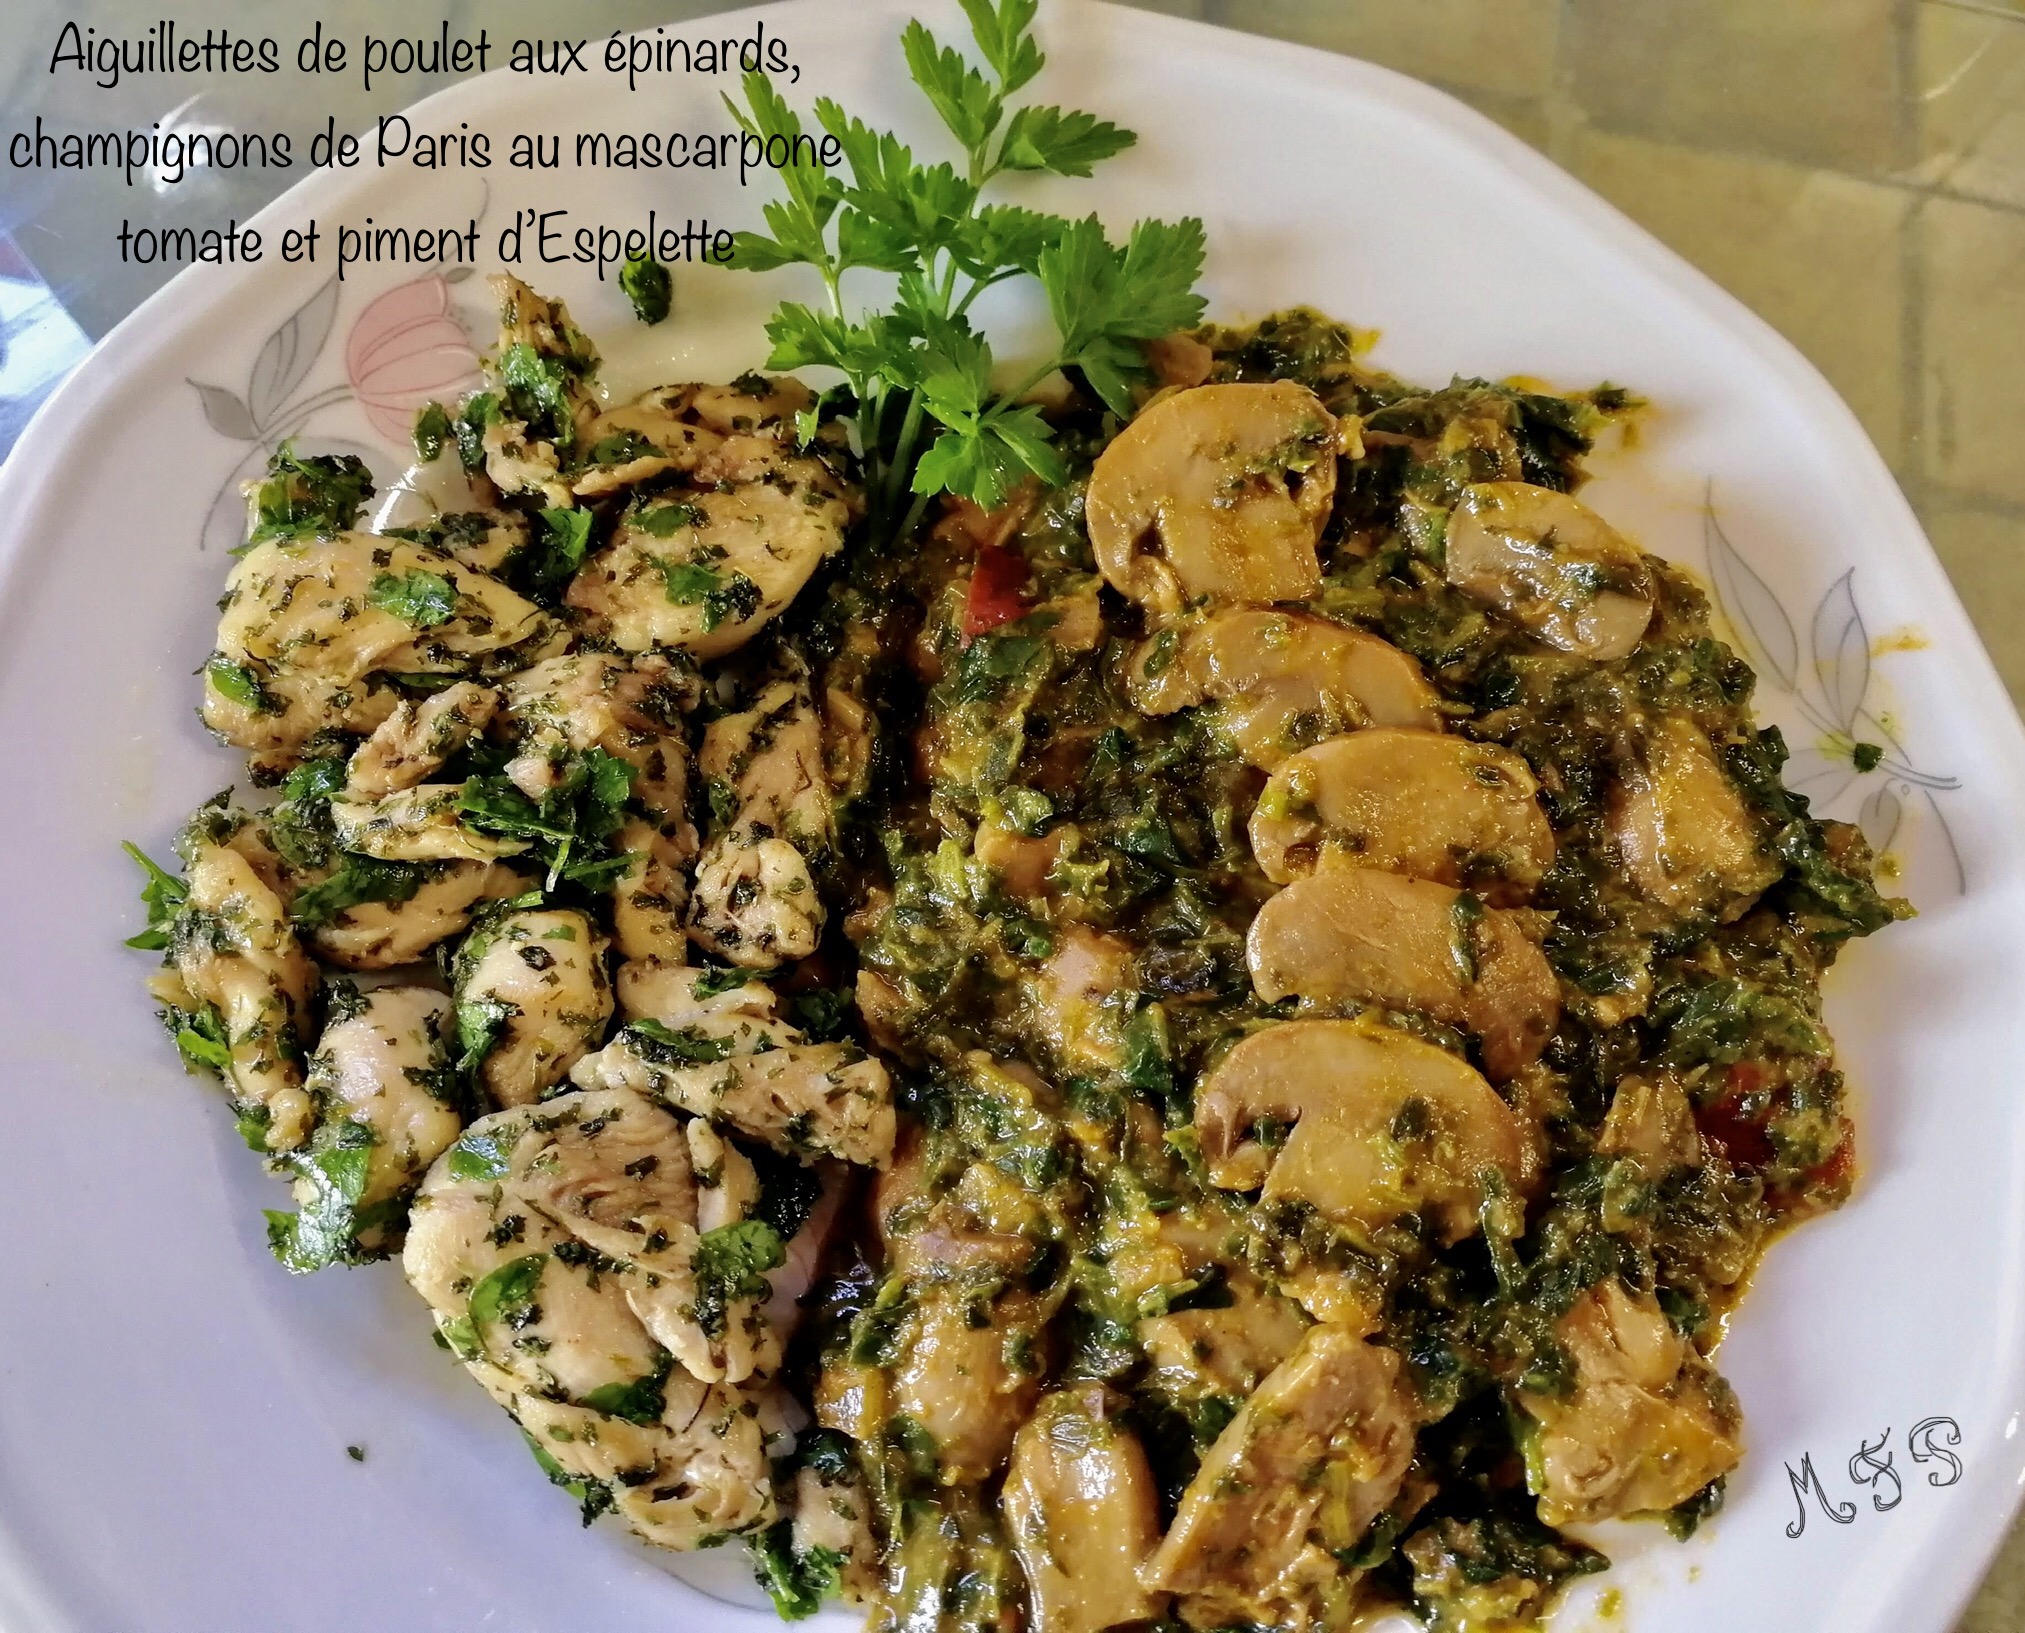 Une recette vite faite Cassegrain : Aiguillettes de poulet aux épinards, champignons de Paris au mascarpone tomate et piment d’Espelette